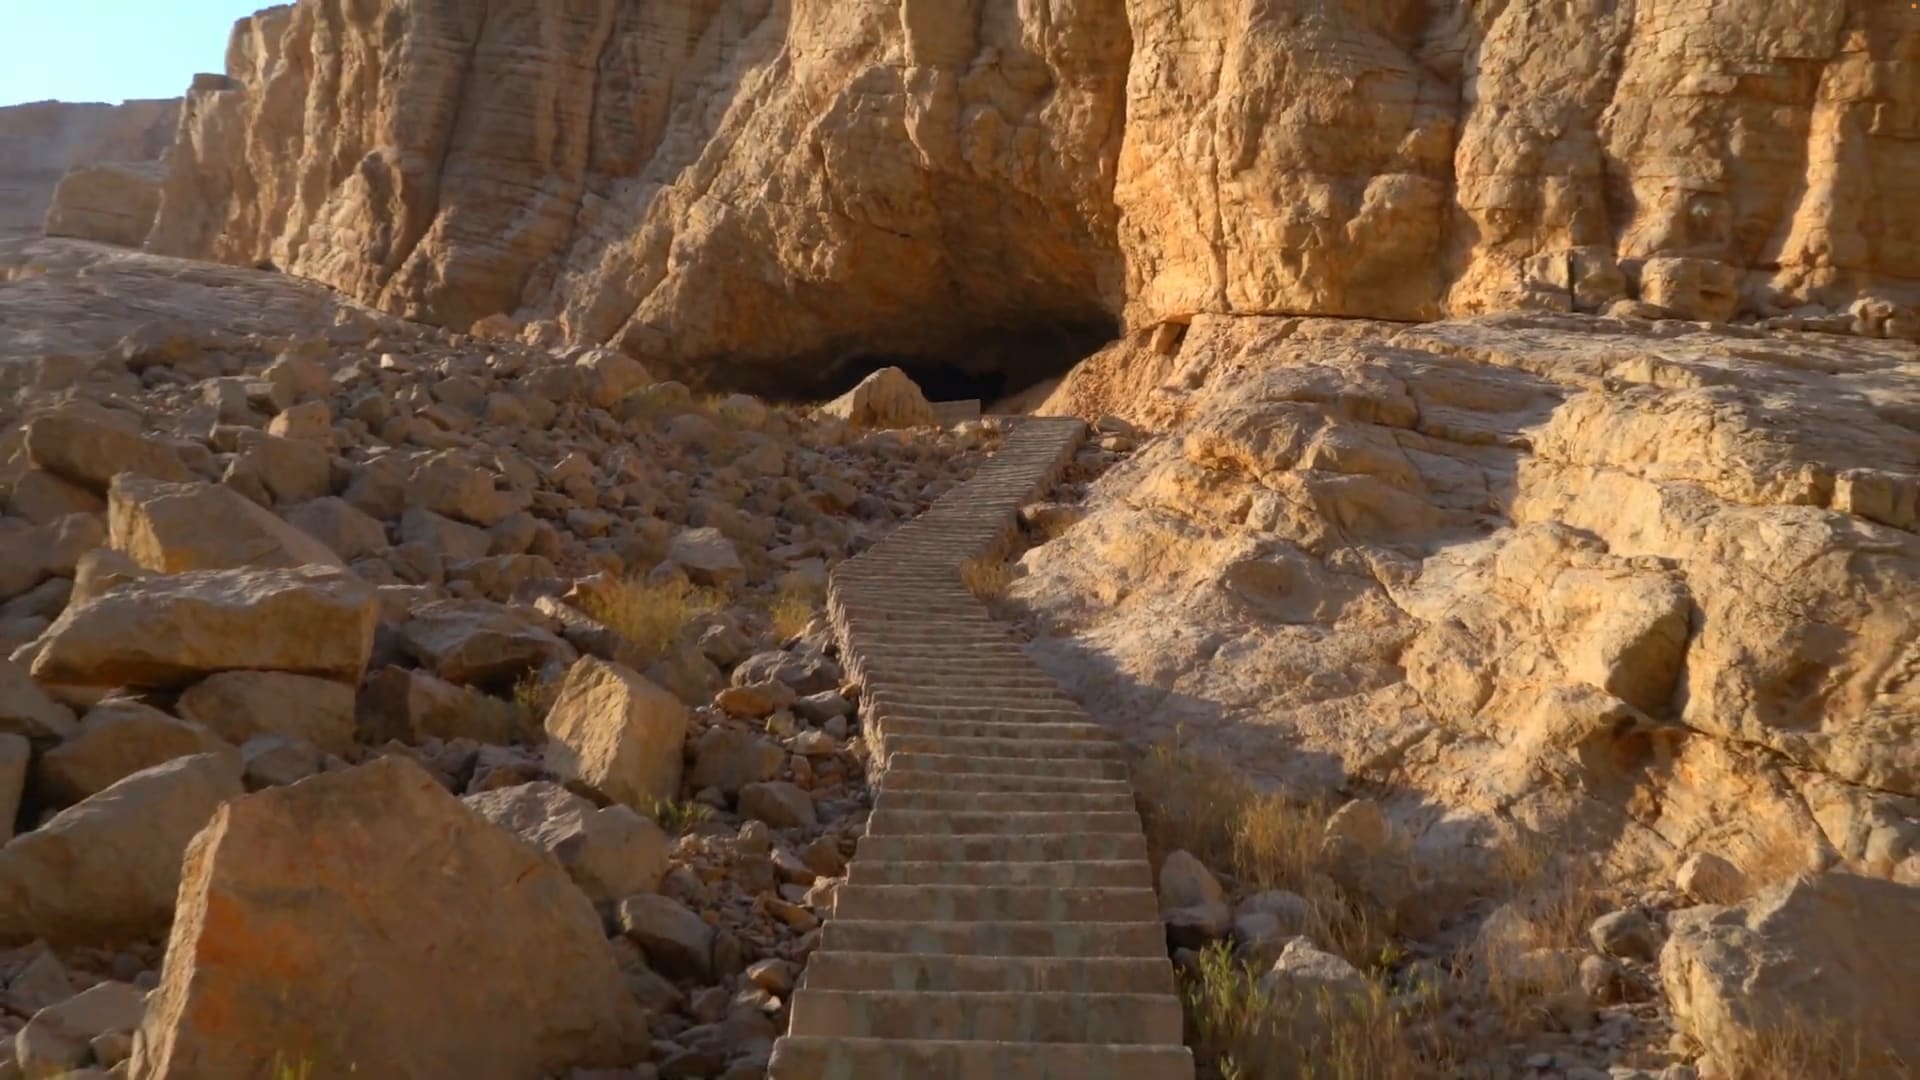 مكان يصعب وصفه.. أين ستؤدي بك هذه السلالم الطويلة بين جبال الإمارات؟